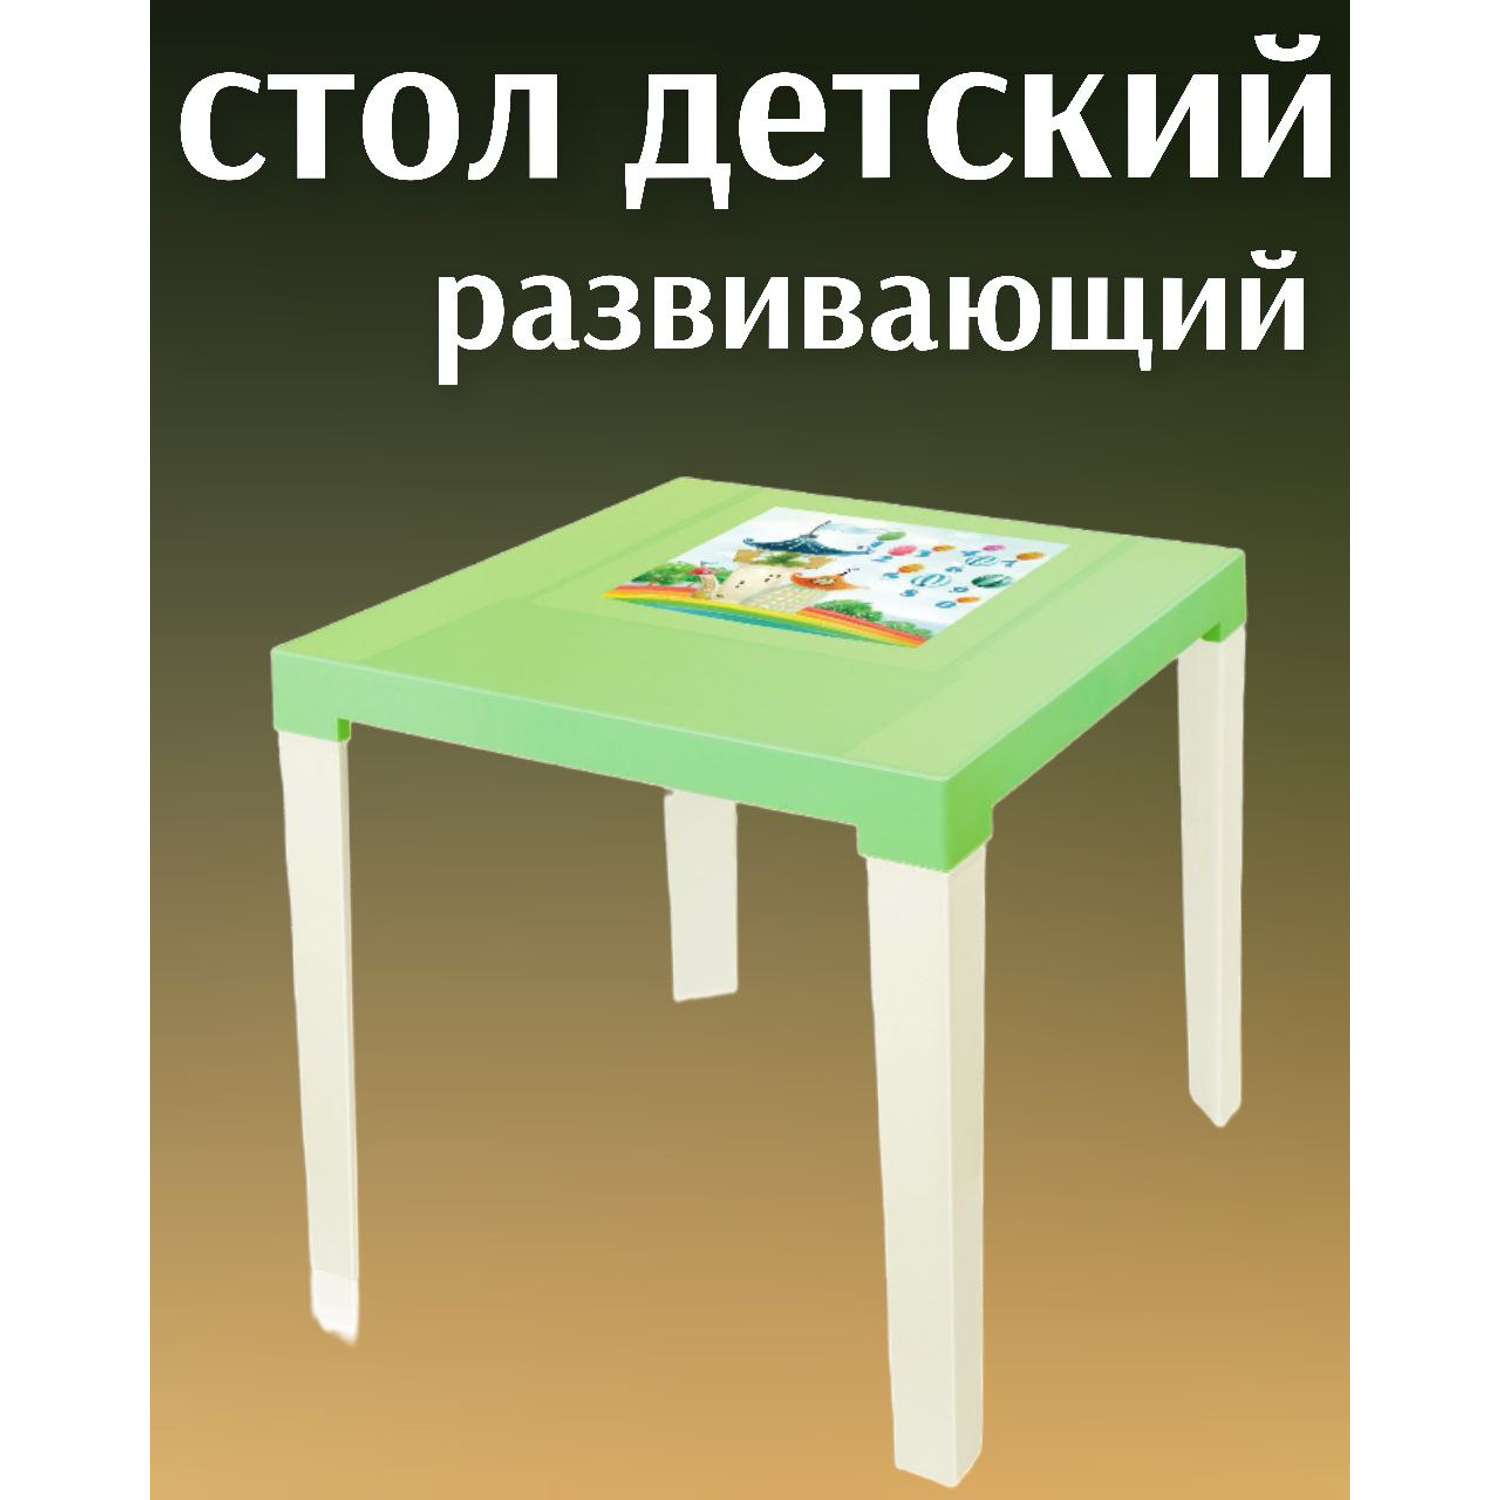 Стол детский развивающий elfplast цвет салатовый/бежевый - фото 1